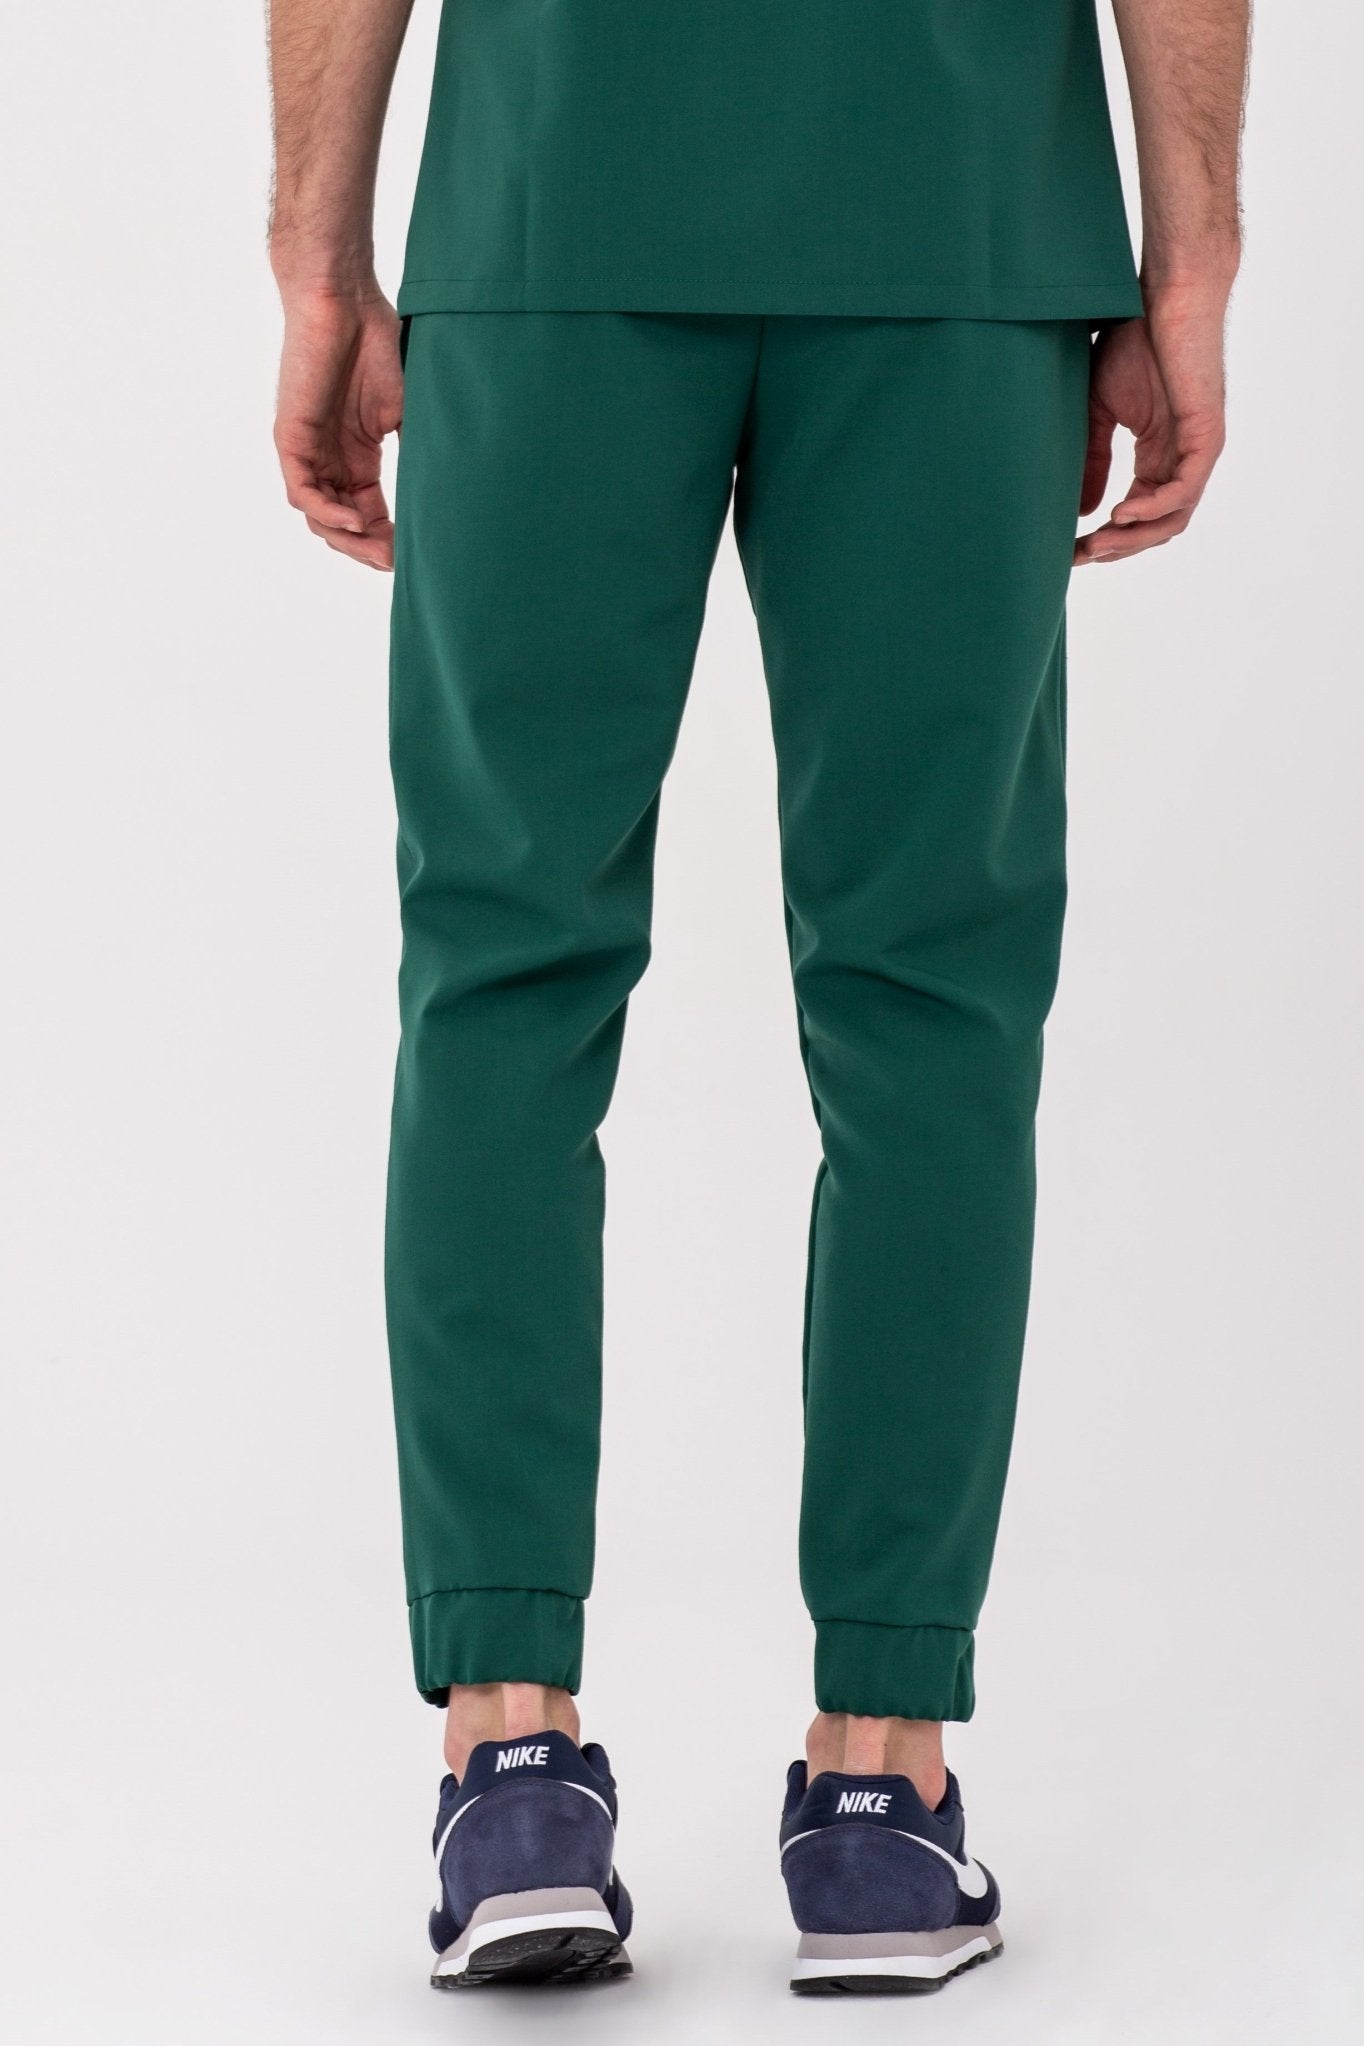 Spodnie medyczne męskie WELT - kolor zielony